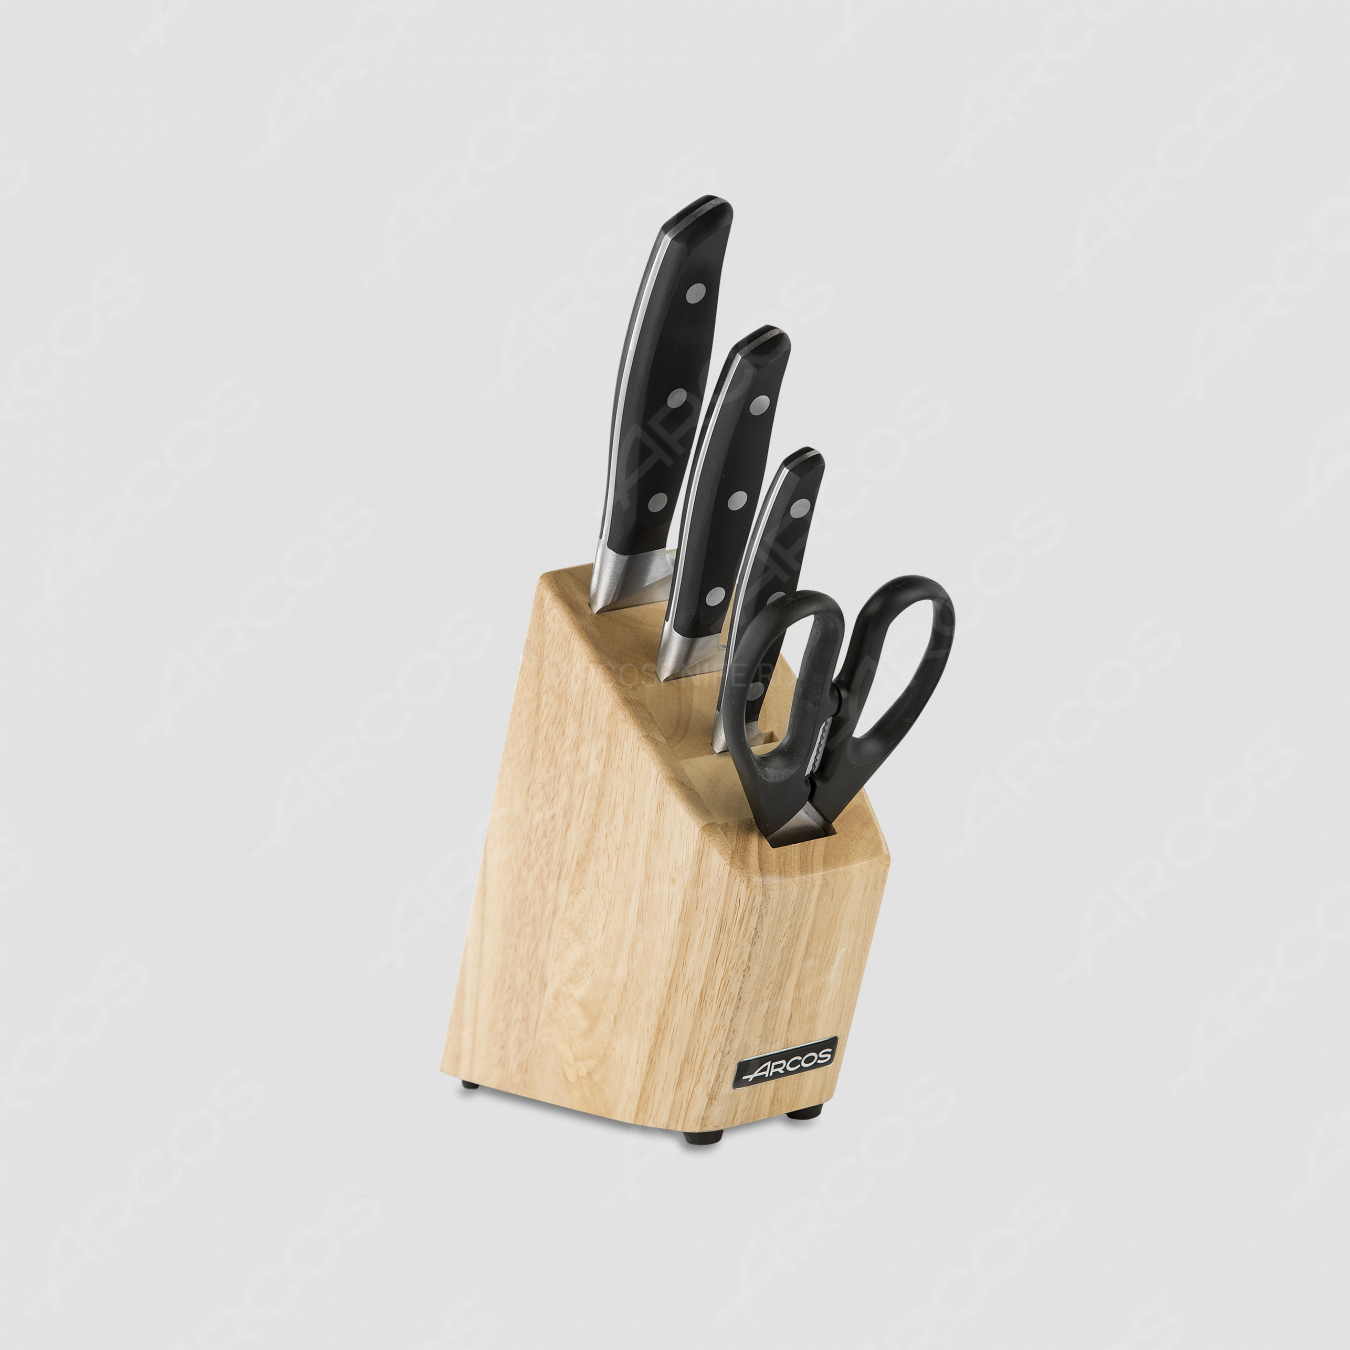 Набор из 3-х кухонных ножей с ножницами на деревянной подставке, серия Manhattan, ARCOS, Испания